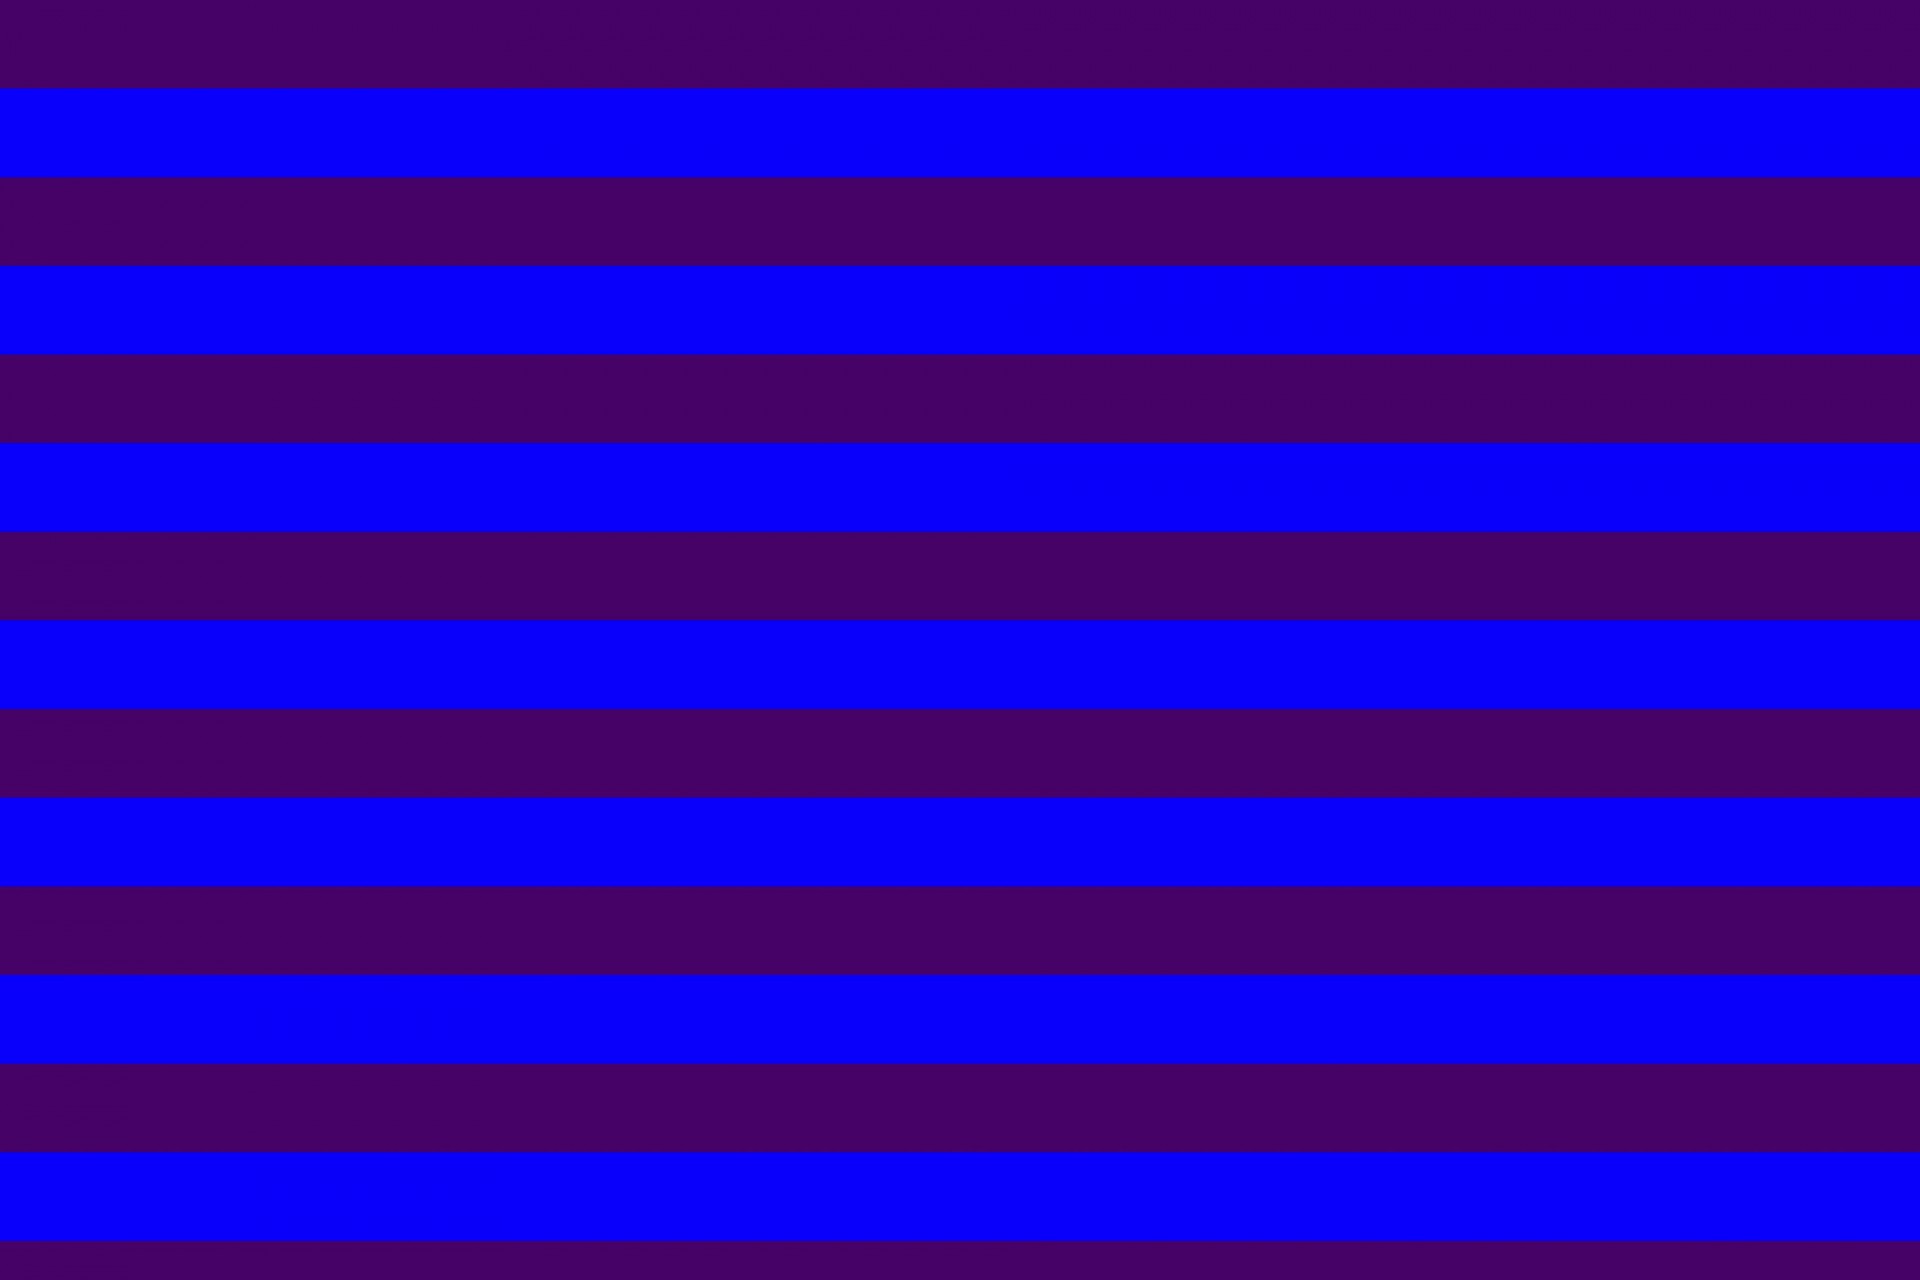 Полосы по горизонтали. Синяя полоска. Фиолетовая полоса. Фиолетовая полоска. Сиреневая полоска.